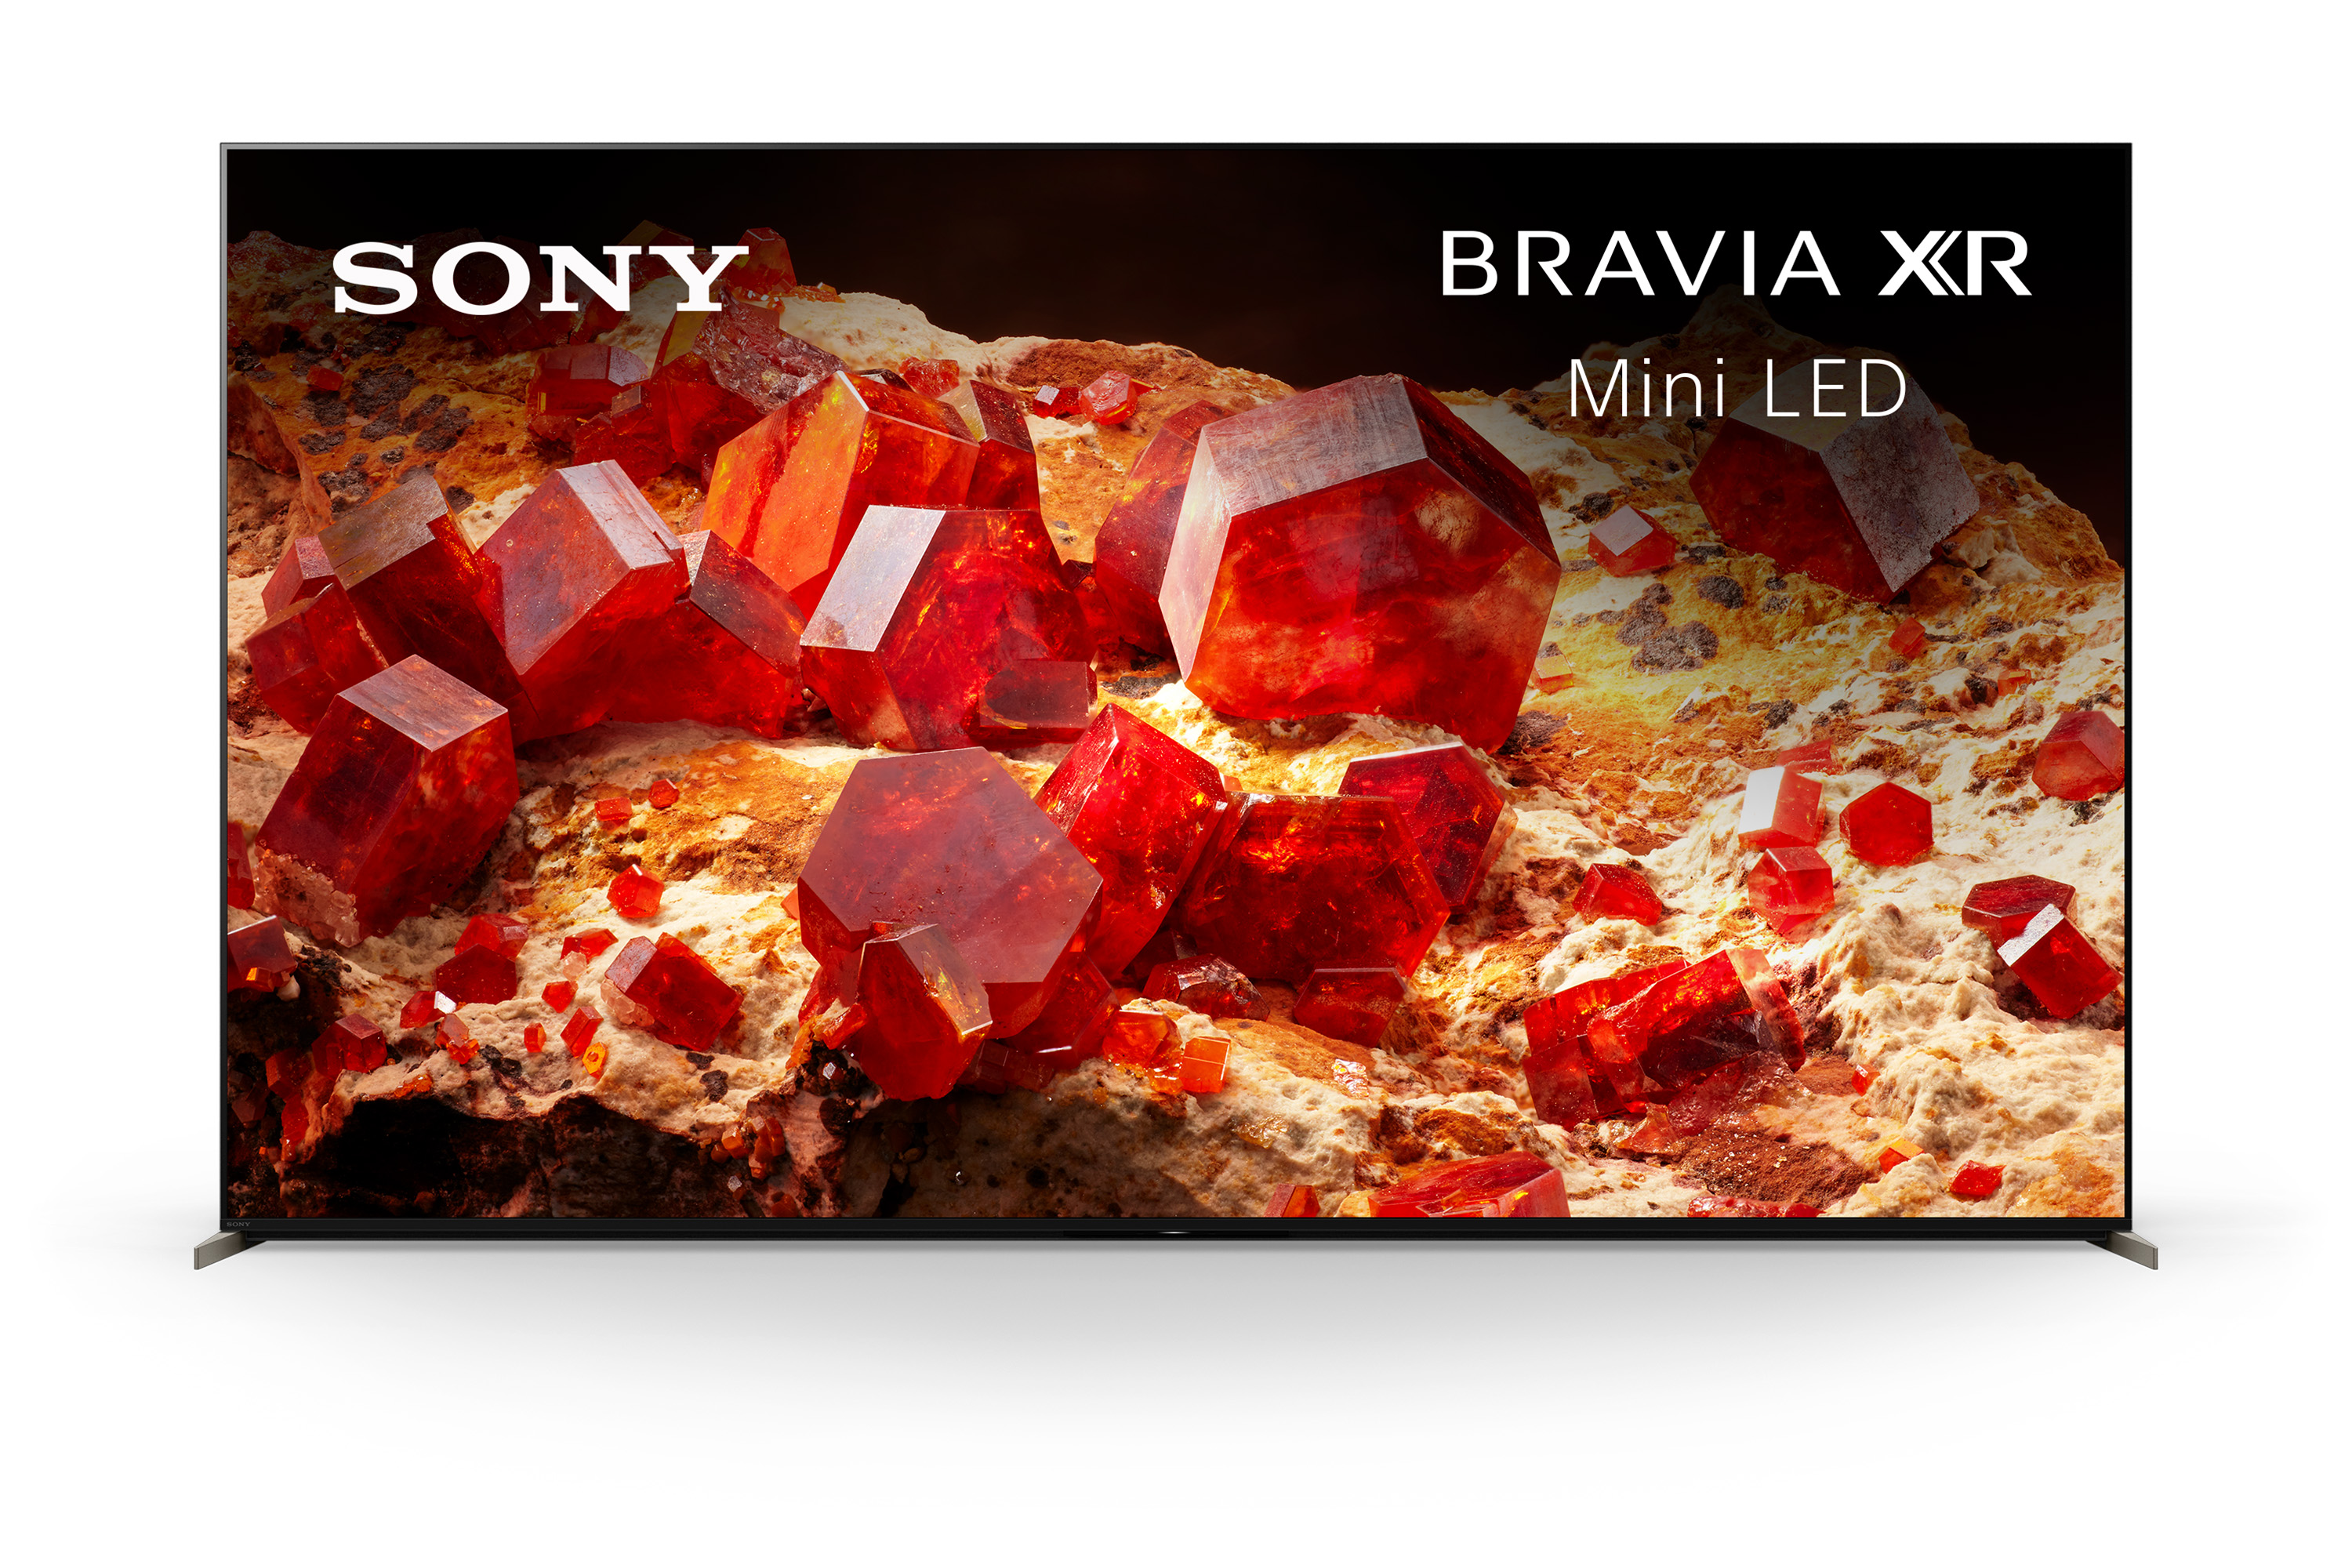 Sony BRAVIA XR X93L Mini LED 4K HDR Google TV - XR65X93L - Sony